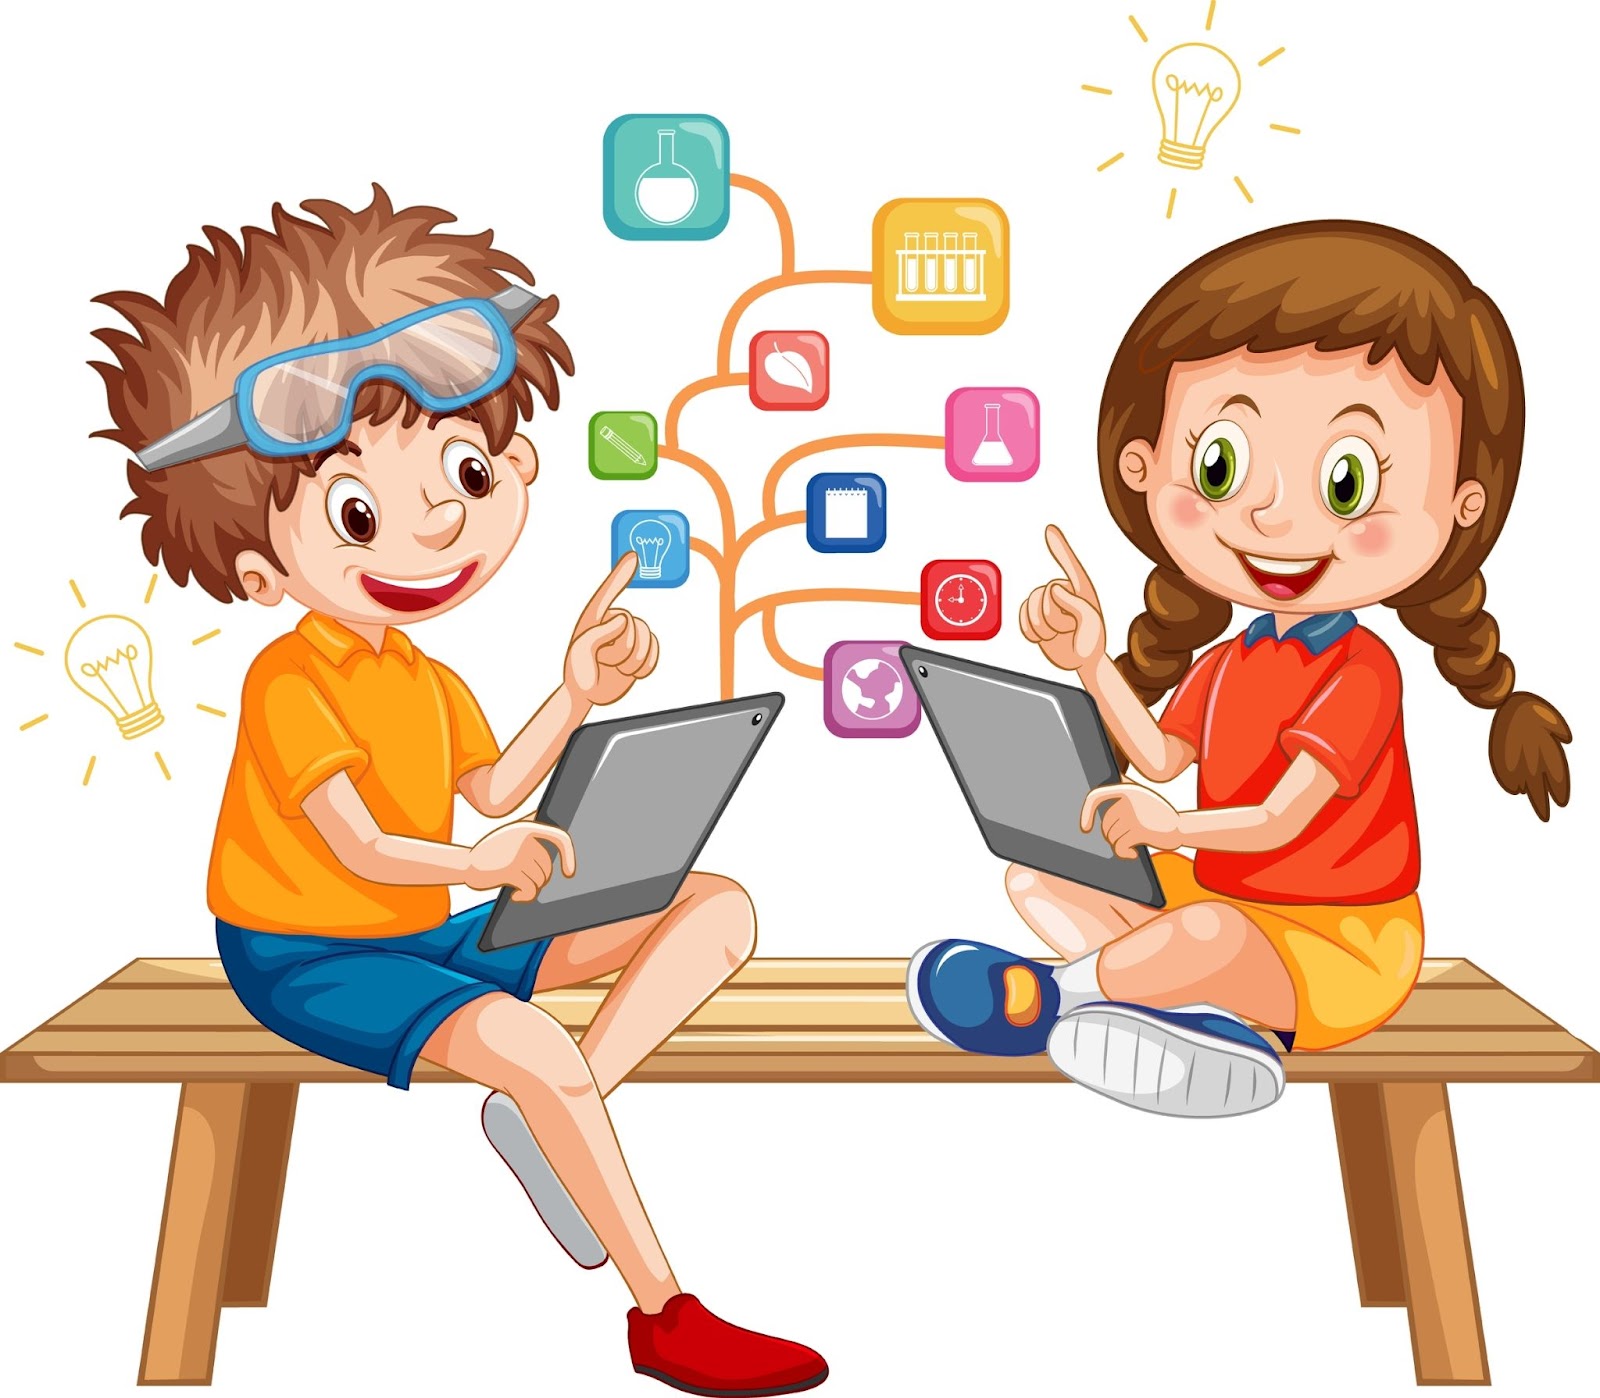 Bambini che utilizzano il tablet con l'illustrazione delle icone dell'istruzione